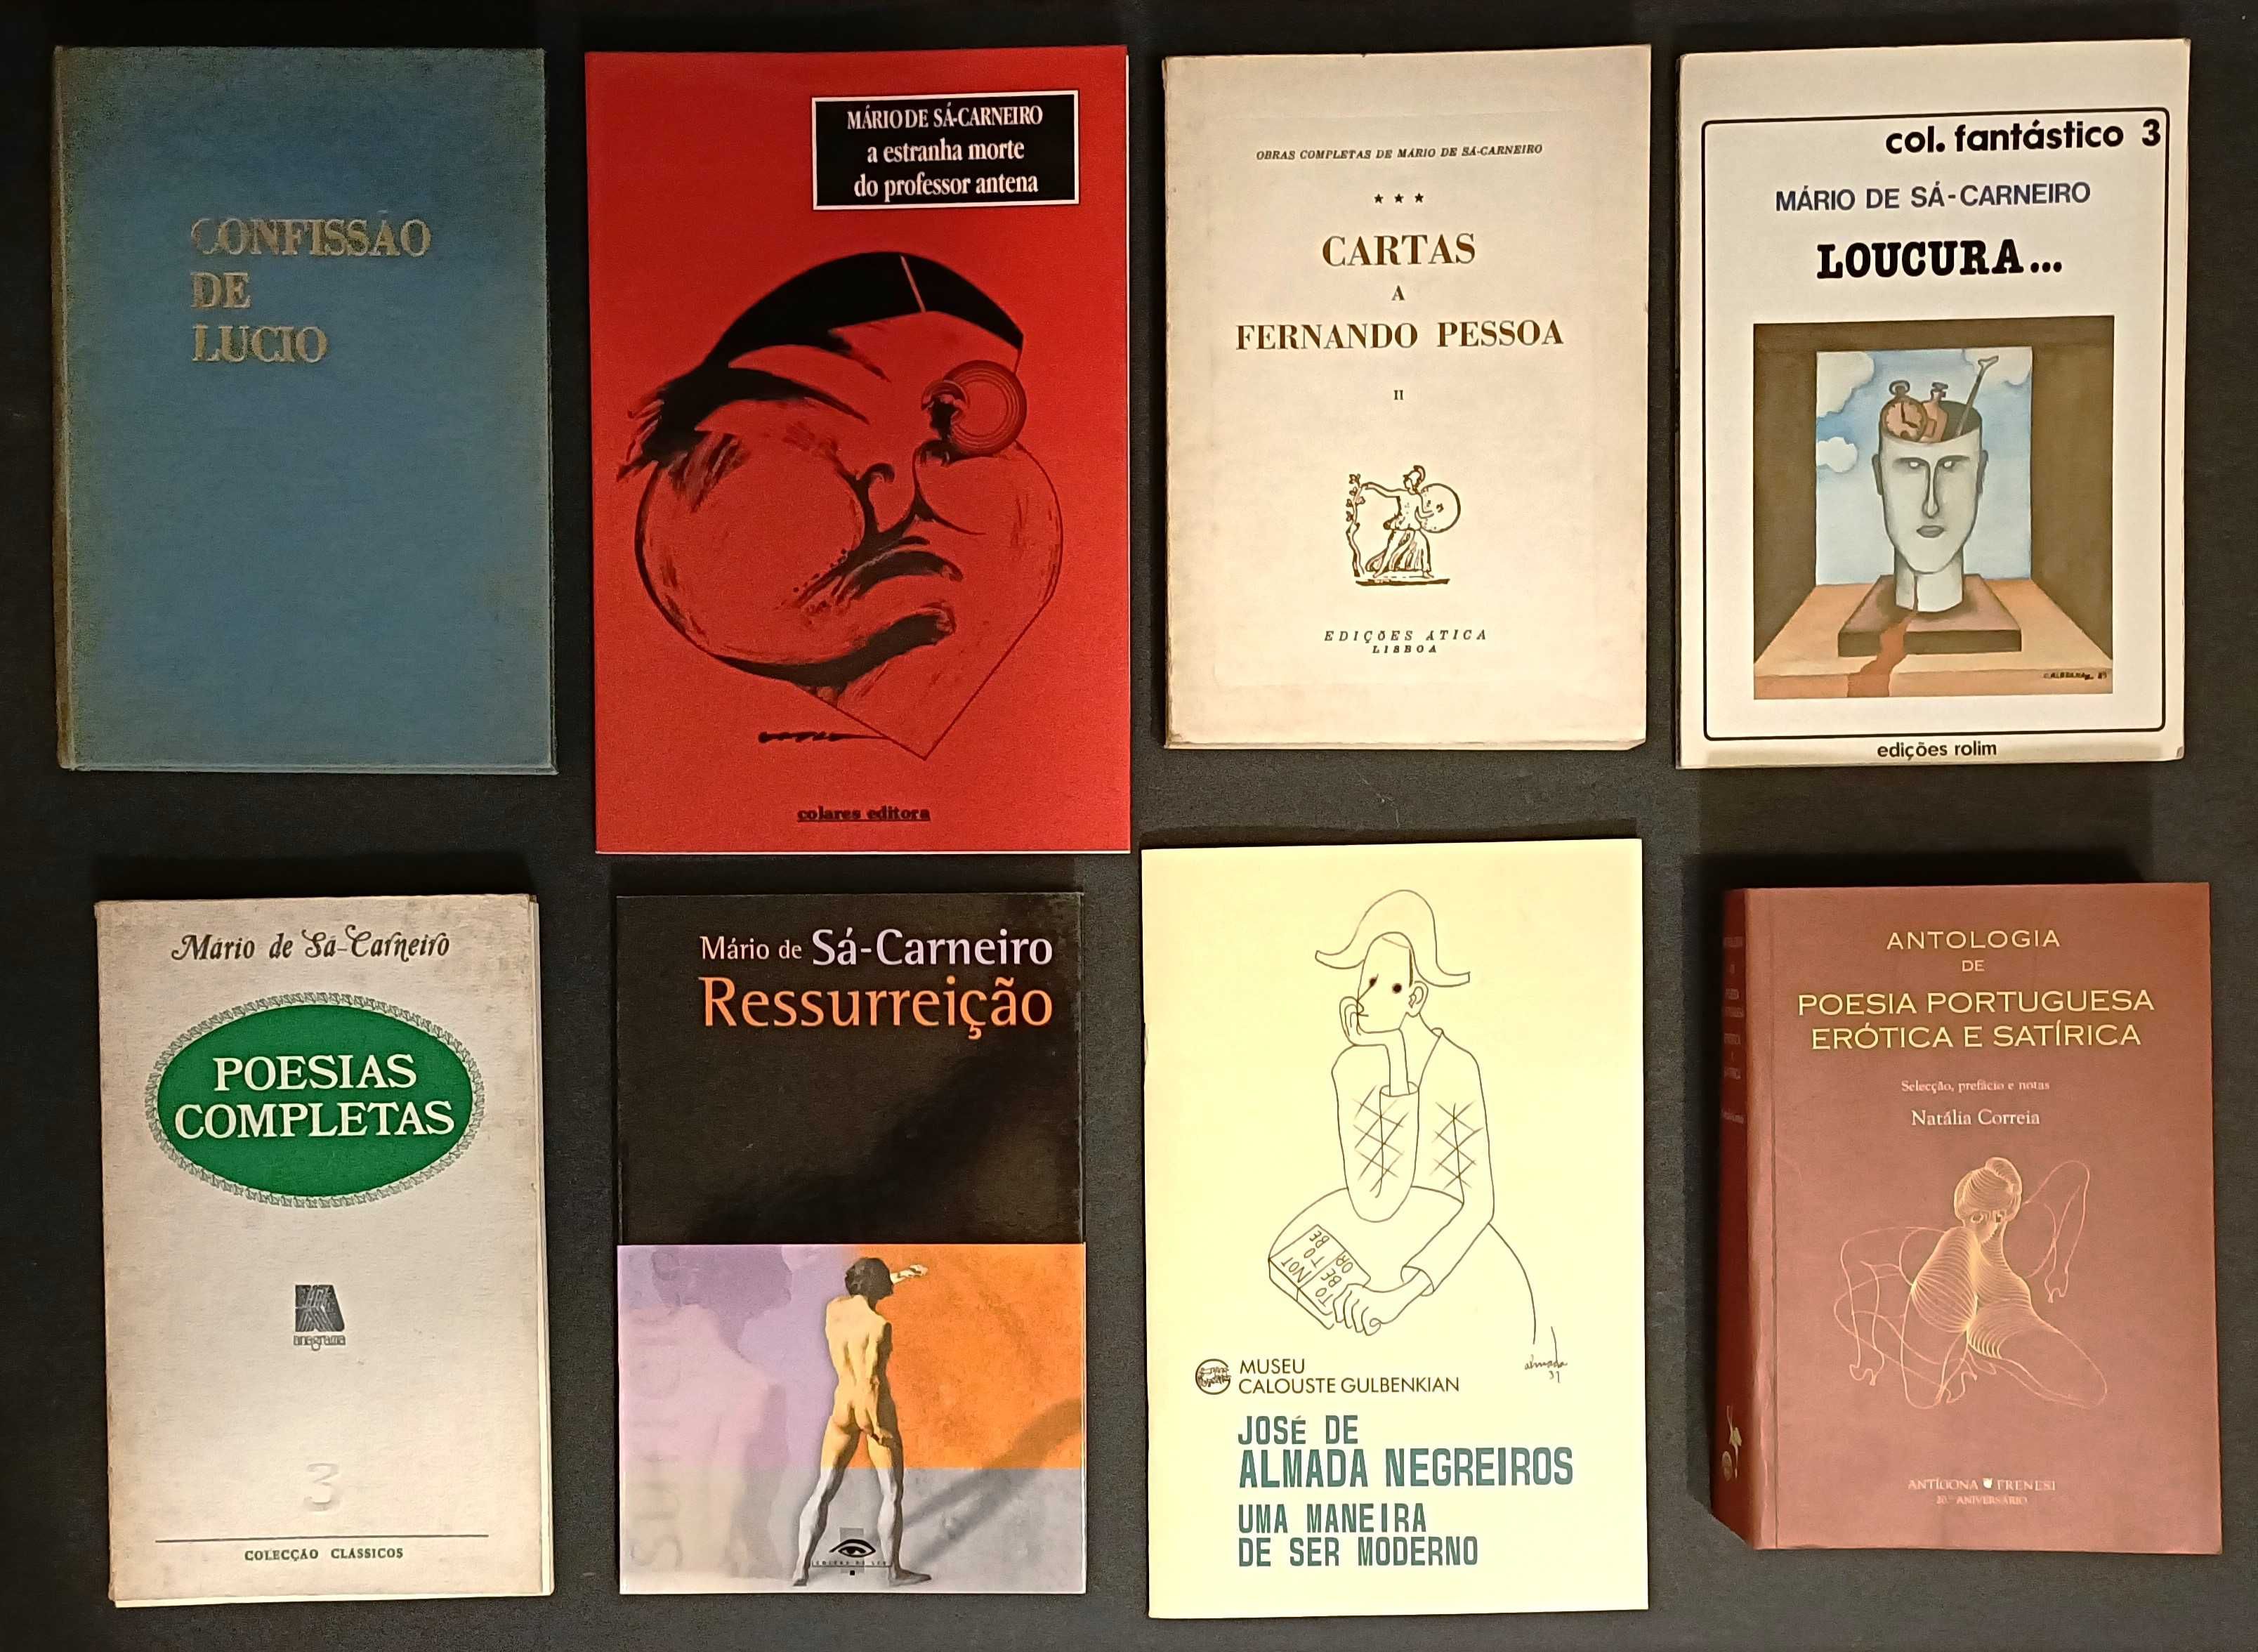 35 livros, principalmente poesia portuguesa. Edições raras. Lote 385€.